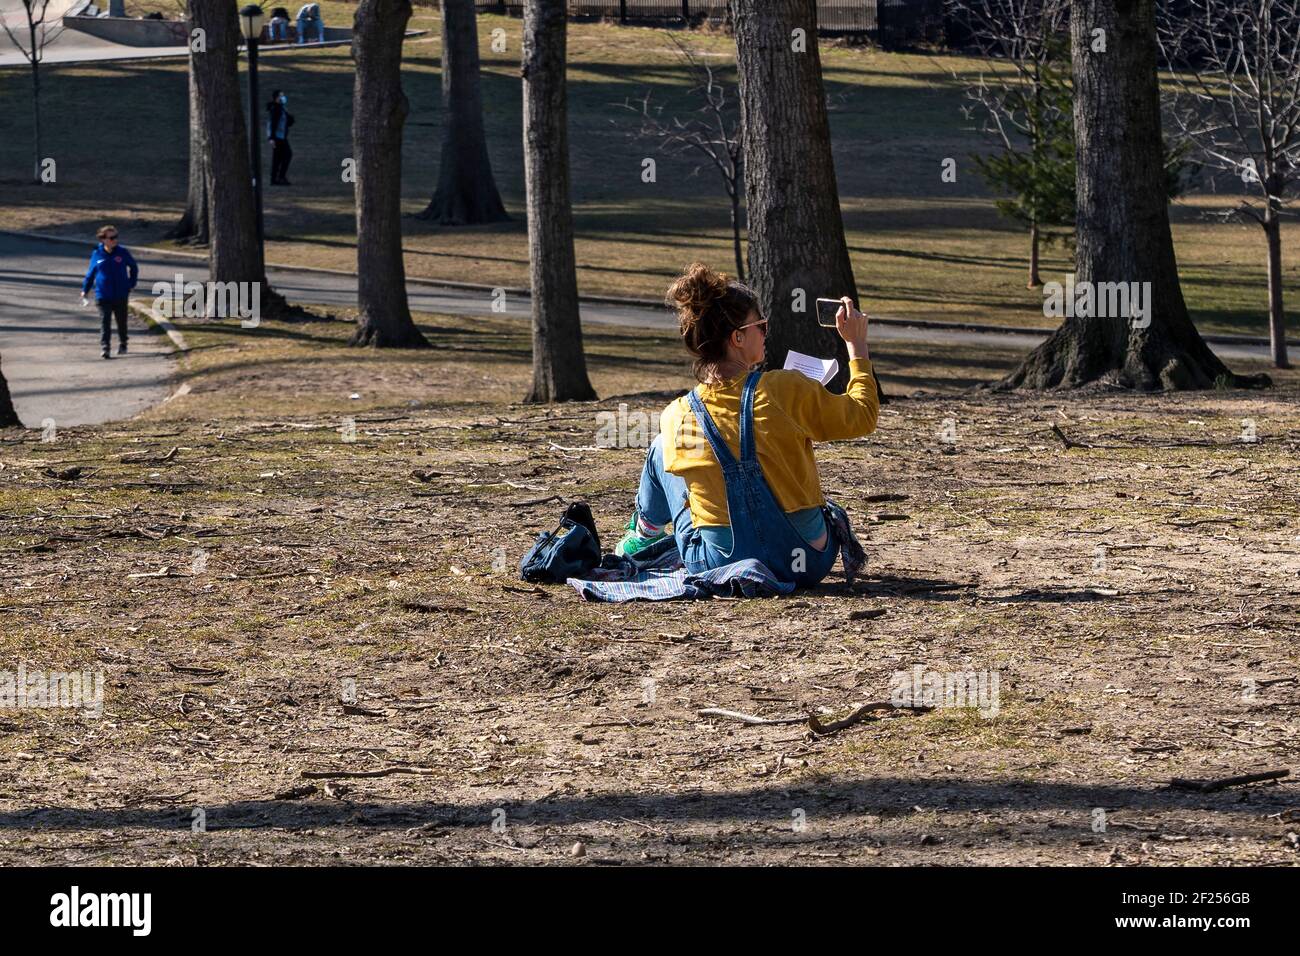 NEW YORK, NEW YORK - 9 MARZO: Una donna in videochiamata vista in un pomeriggio caldo ad Astoria Park il 9 marzo 2021 a New York City. Dopo giorni di neve Foto Stock